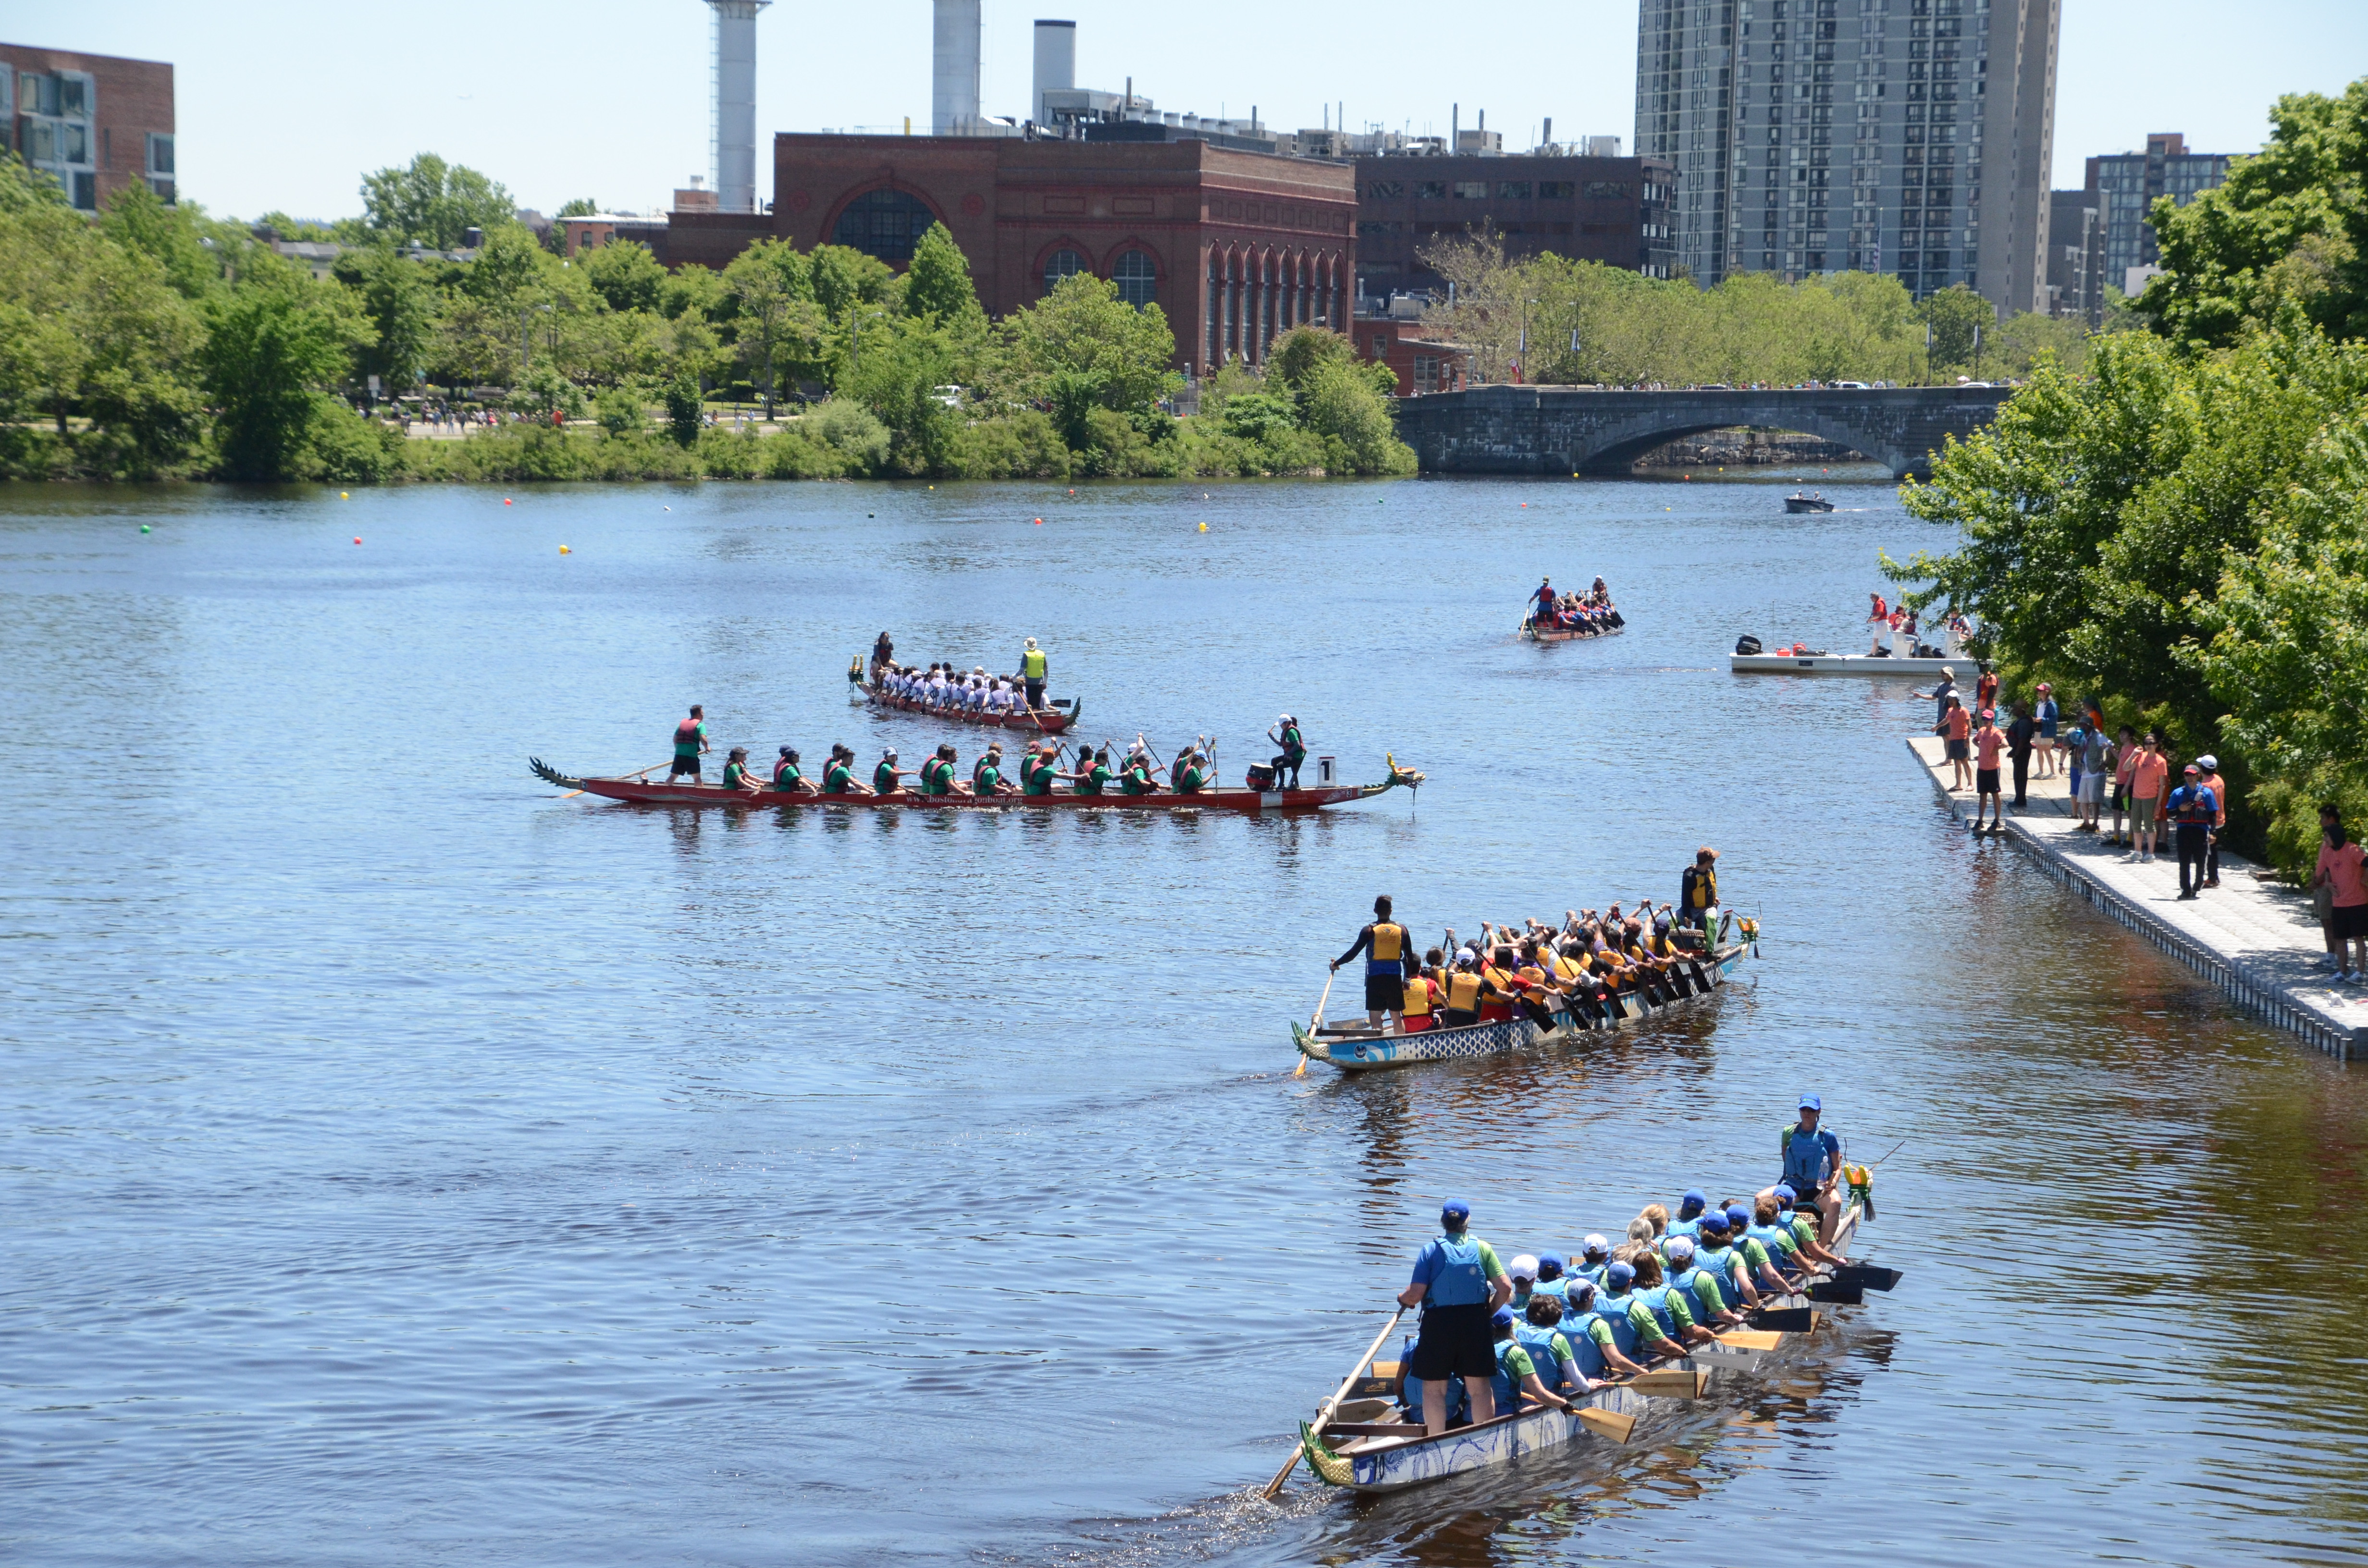 Boston Dragon Boat Festival celebrates Asian American culture and heritage